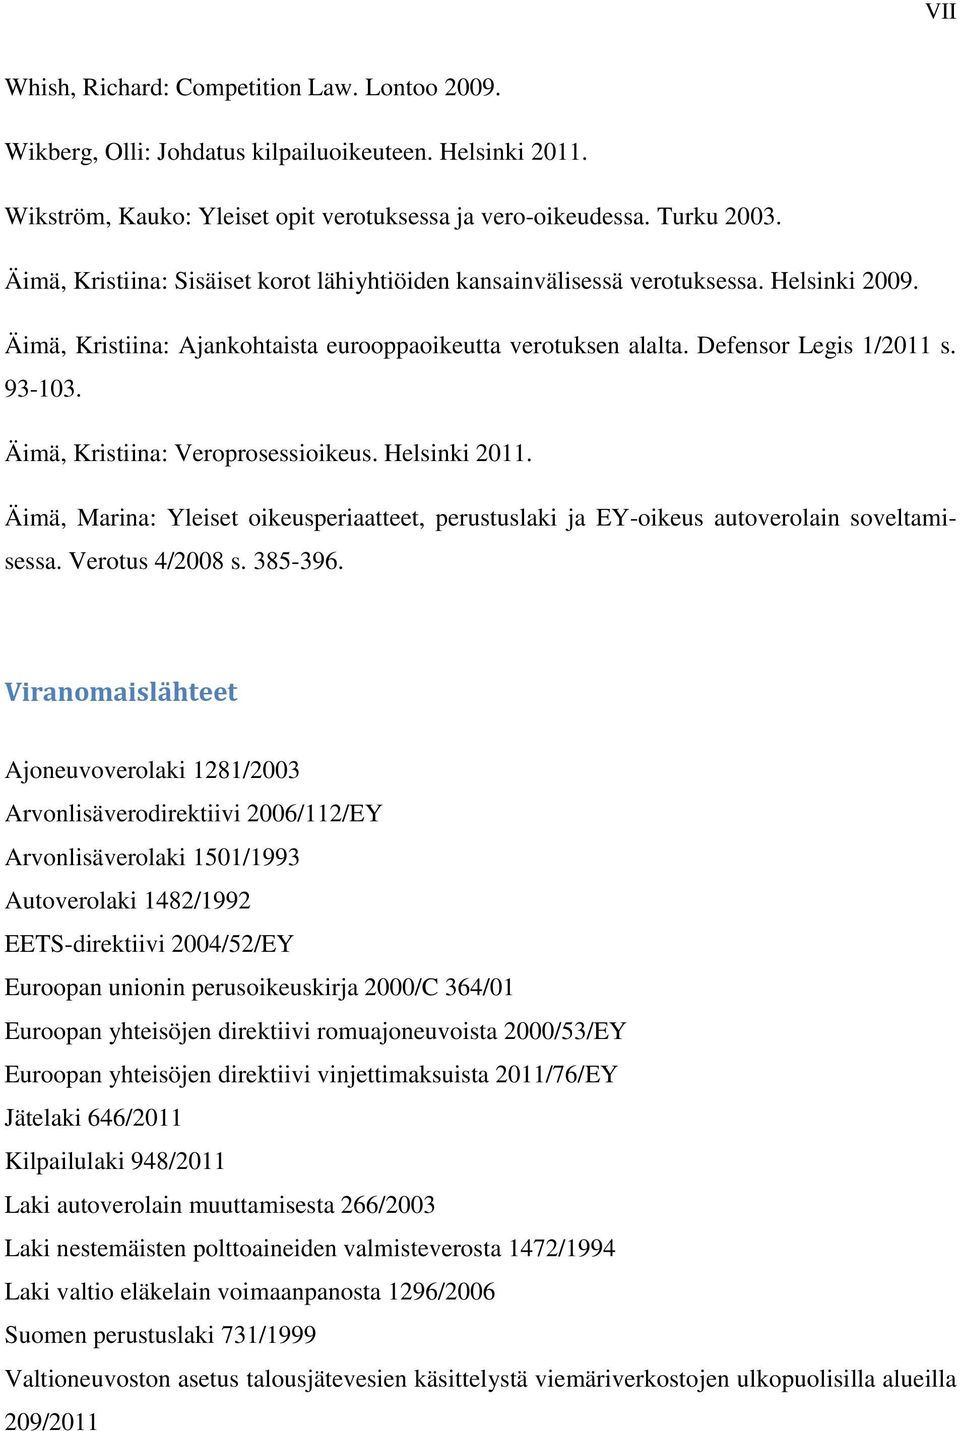 Äimä, Kristiina: Veroprosessioikeus. Helsinki 2011. Äimä, Marina: Yleiset oikeusperiaatteet, perustuslaki ja EY-oikeus autoverolain soveltamisessa. Verotus 4/2008 s. 385-396.